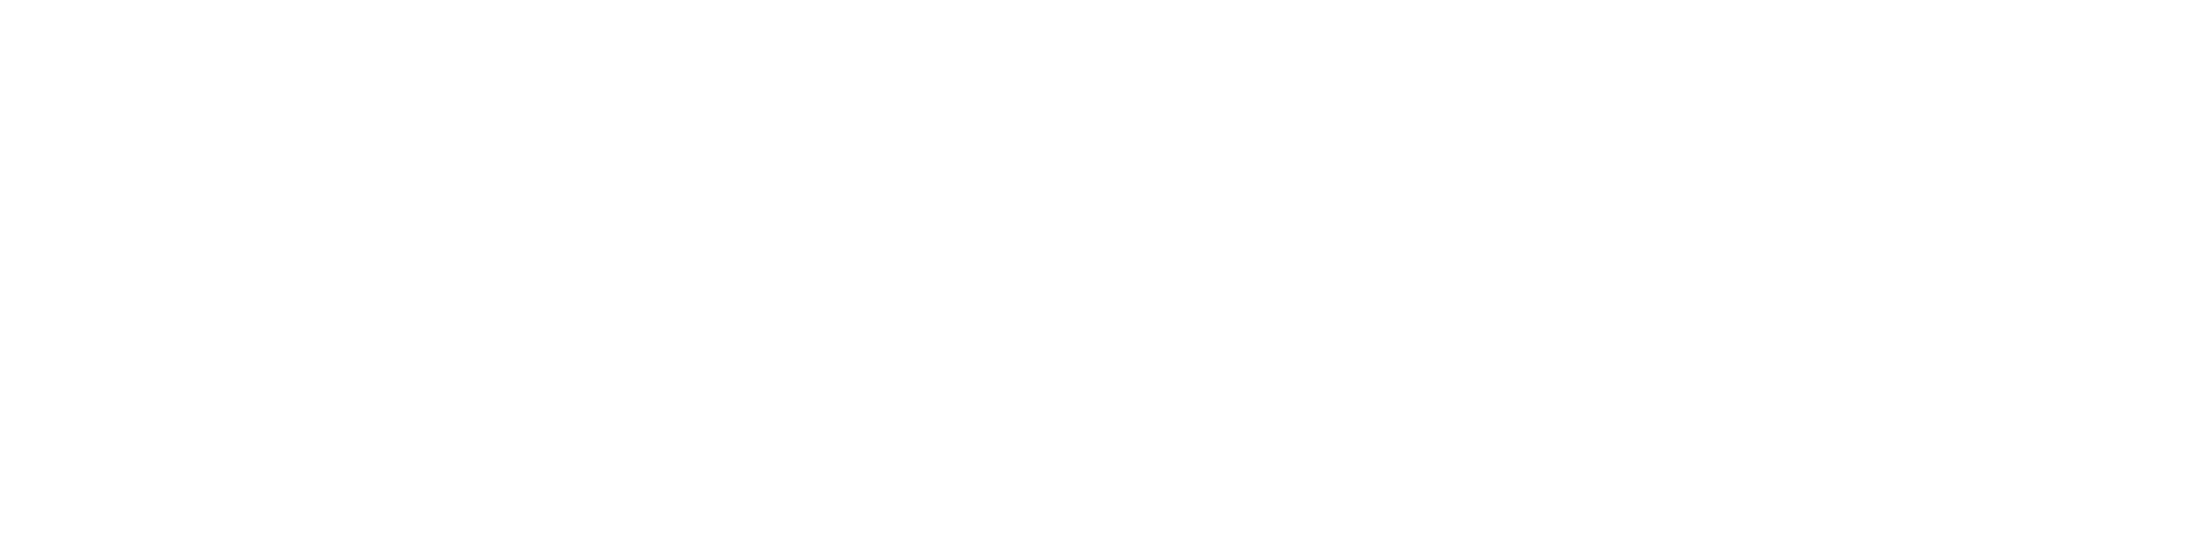 Gta San Andreas - Open Key Logo Clipart (2191x545), Png Download